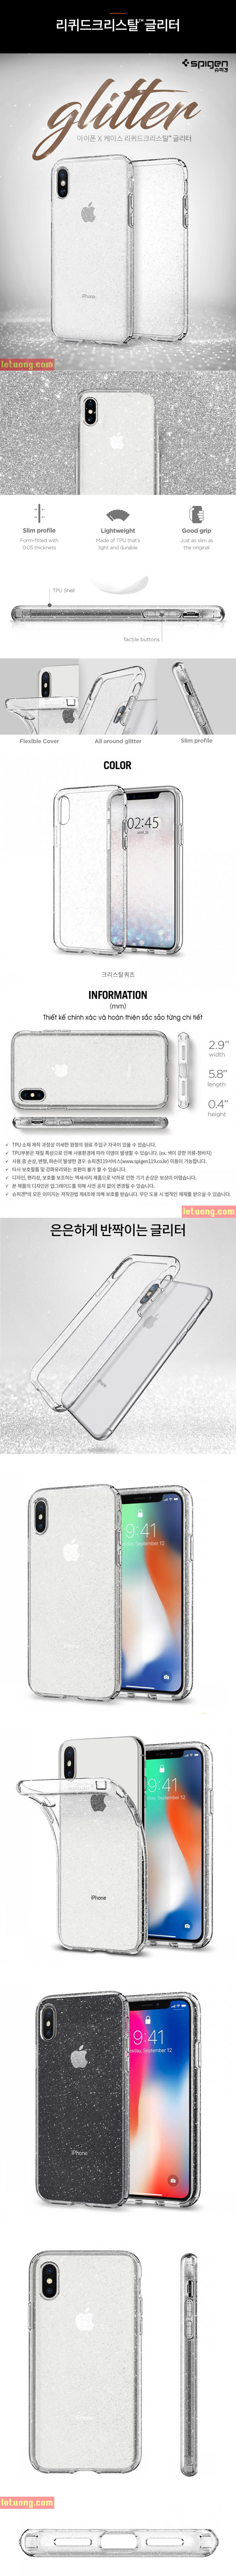 op-lung-iphone-x-spigen-liquid-crystal-glitter-kim-tuyen-tuyet-dep-4.jpg